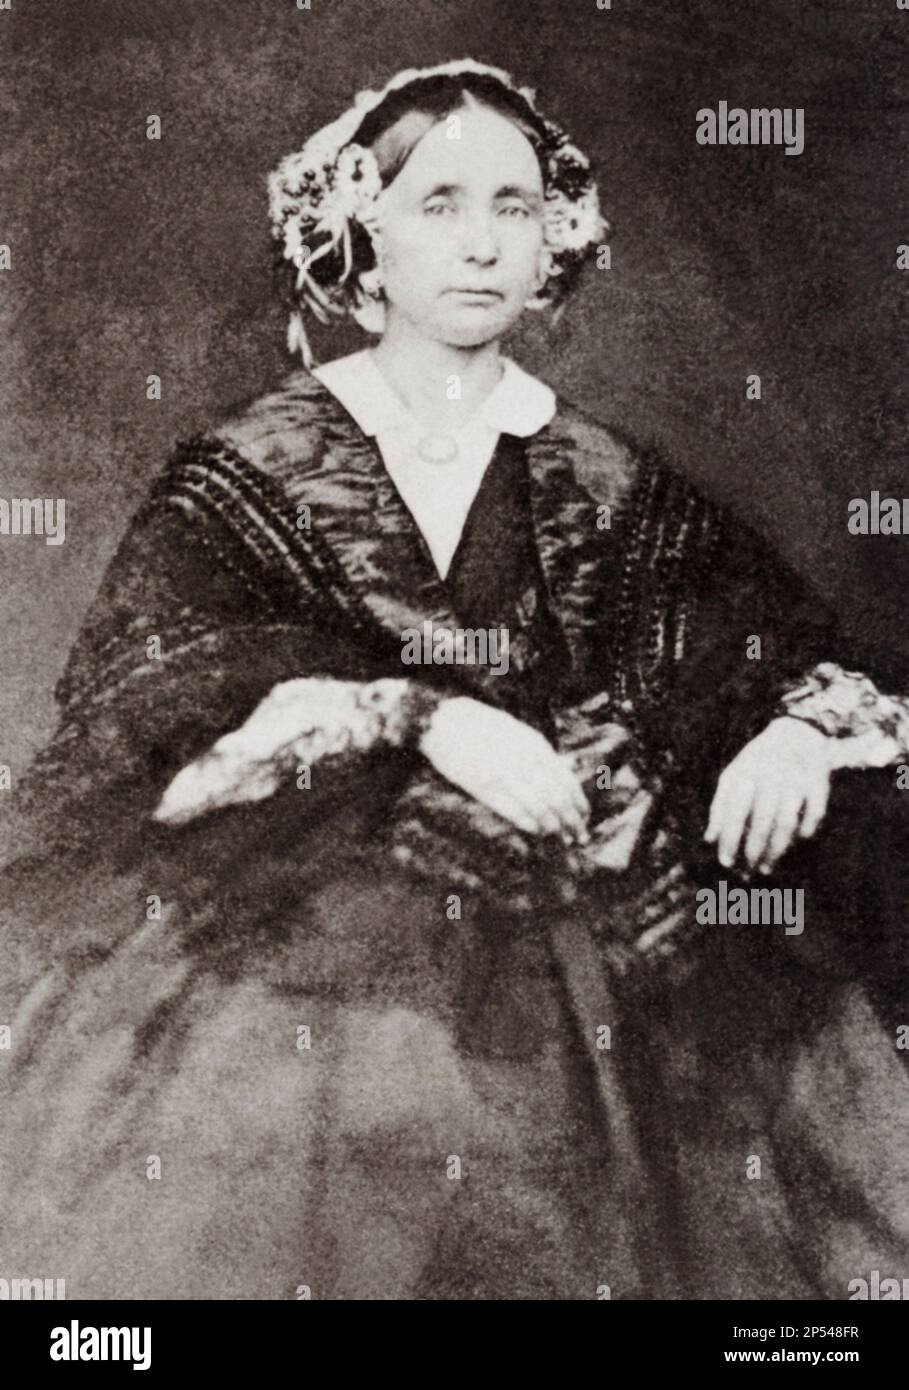 1855 ca, ITALIA : la Regina delle due Sicilie MARIA TERESA Arciduchessa d'AUSTRIA e rimarata a Napoli 1837 ( Maria TERESA , 1816 - 1867), sposata a Napoli nel 1837 con il re FERDINANDO II di Borbone-due Sicilie BORBONE delle due Sicilie ( Palermo 1810 - Caserta 1859 ) , RE dal 1830 al 1859, Duca di Calabria (dal 1825 al 1830 ), già Duca di noto dalla nascita . Maria Theresia era la sua 2nd moglie , da questo matrimonio nato 12 figli - REALI - royalty - nobili - nobiltà - ritratto - ritratto - REGINA - ritratto - ritratto - ASBURGO - ABSBURG - ASBURGO --- Archivio GBB Foto Stock